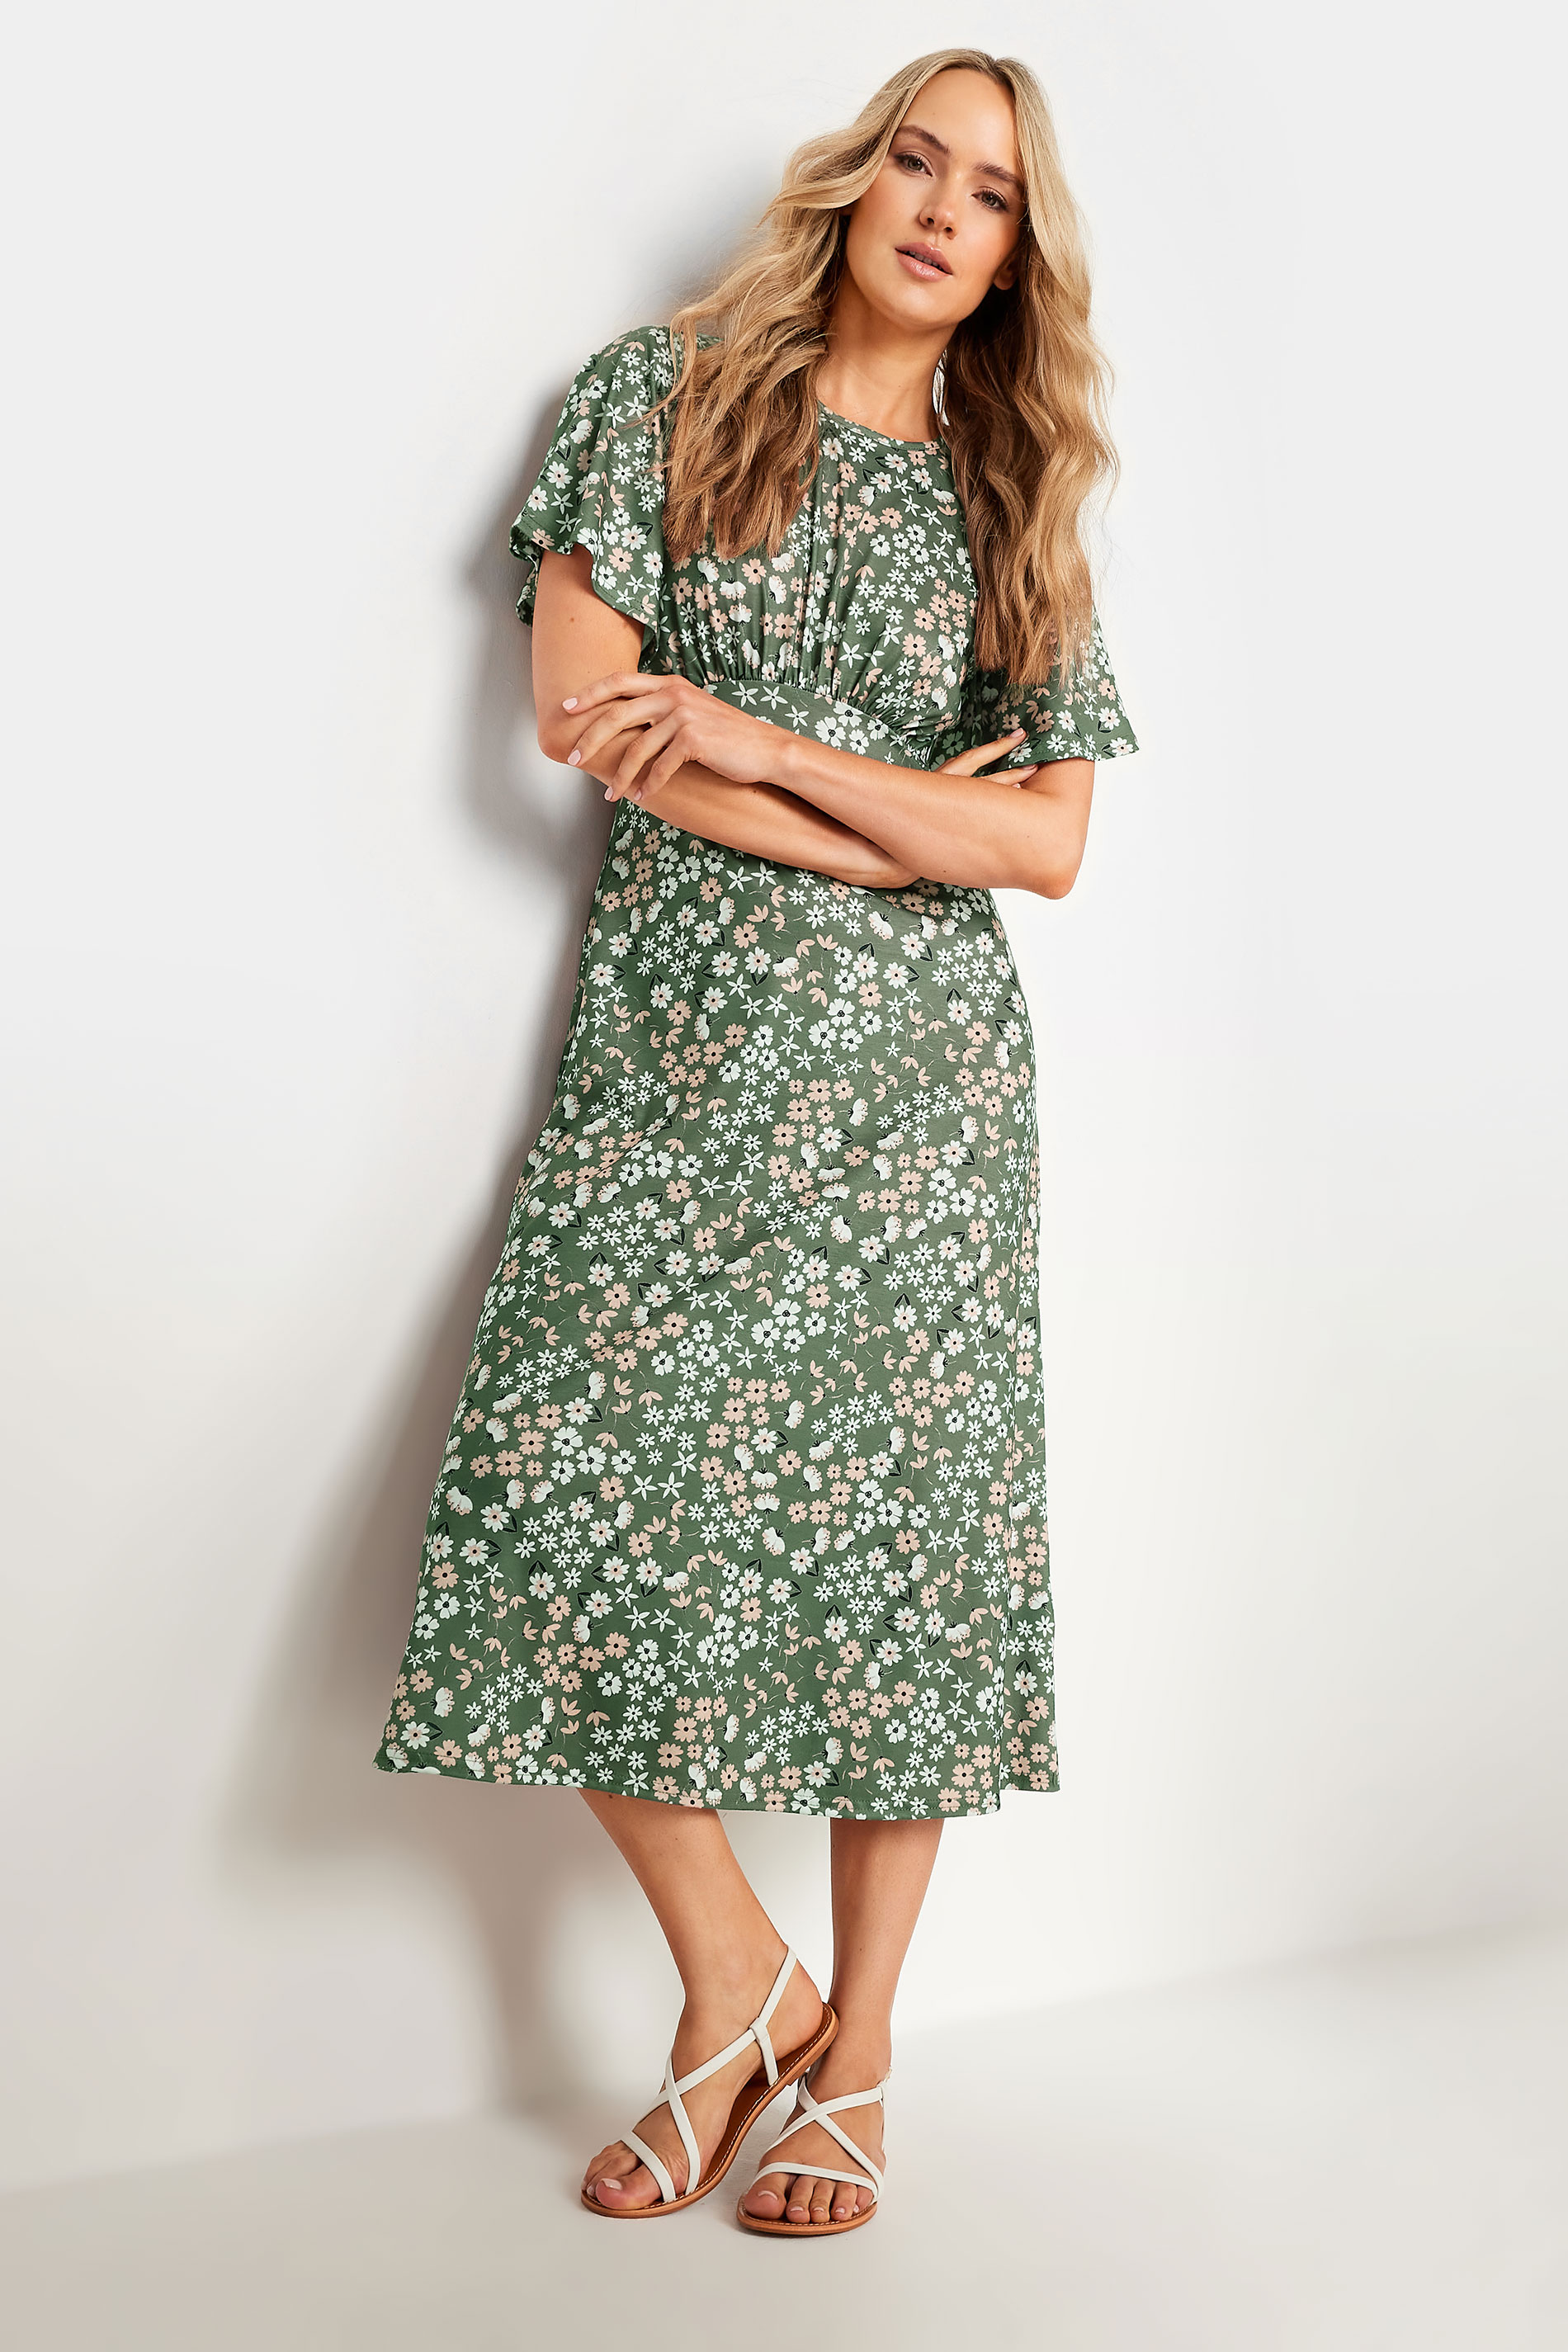 LTS Tall Women's Khaki Green Floral Print Midi Dress | Long Tall Sally 2